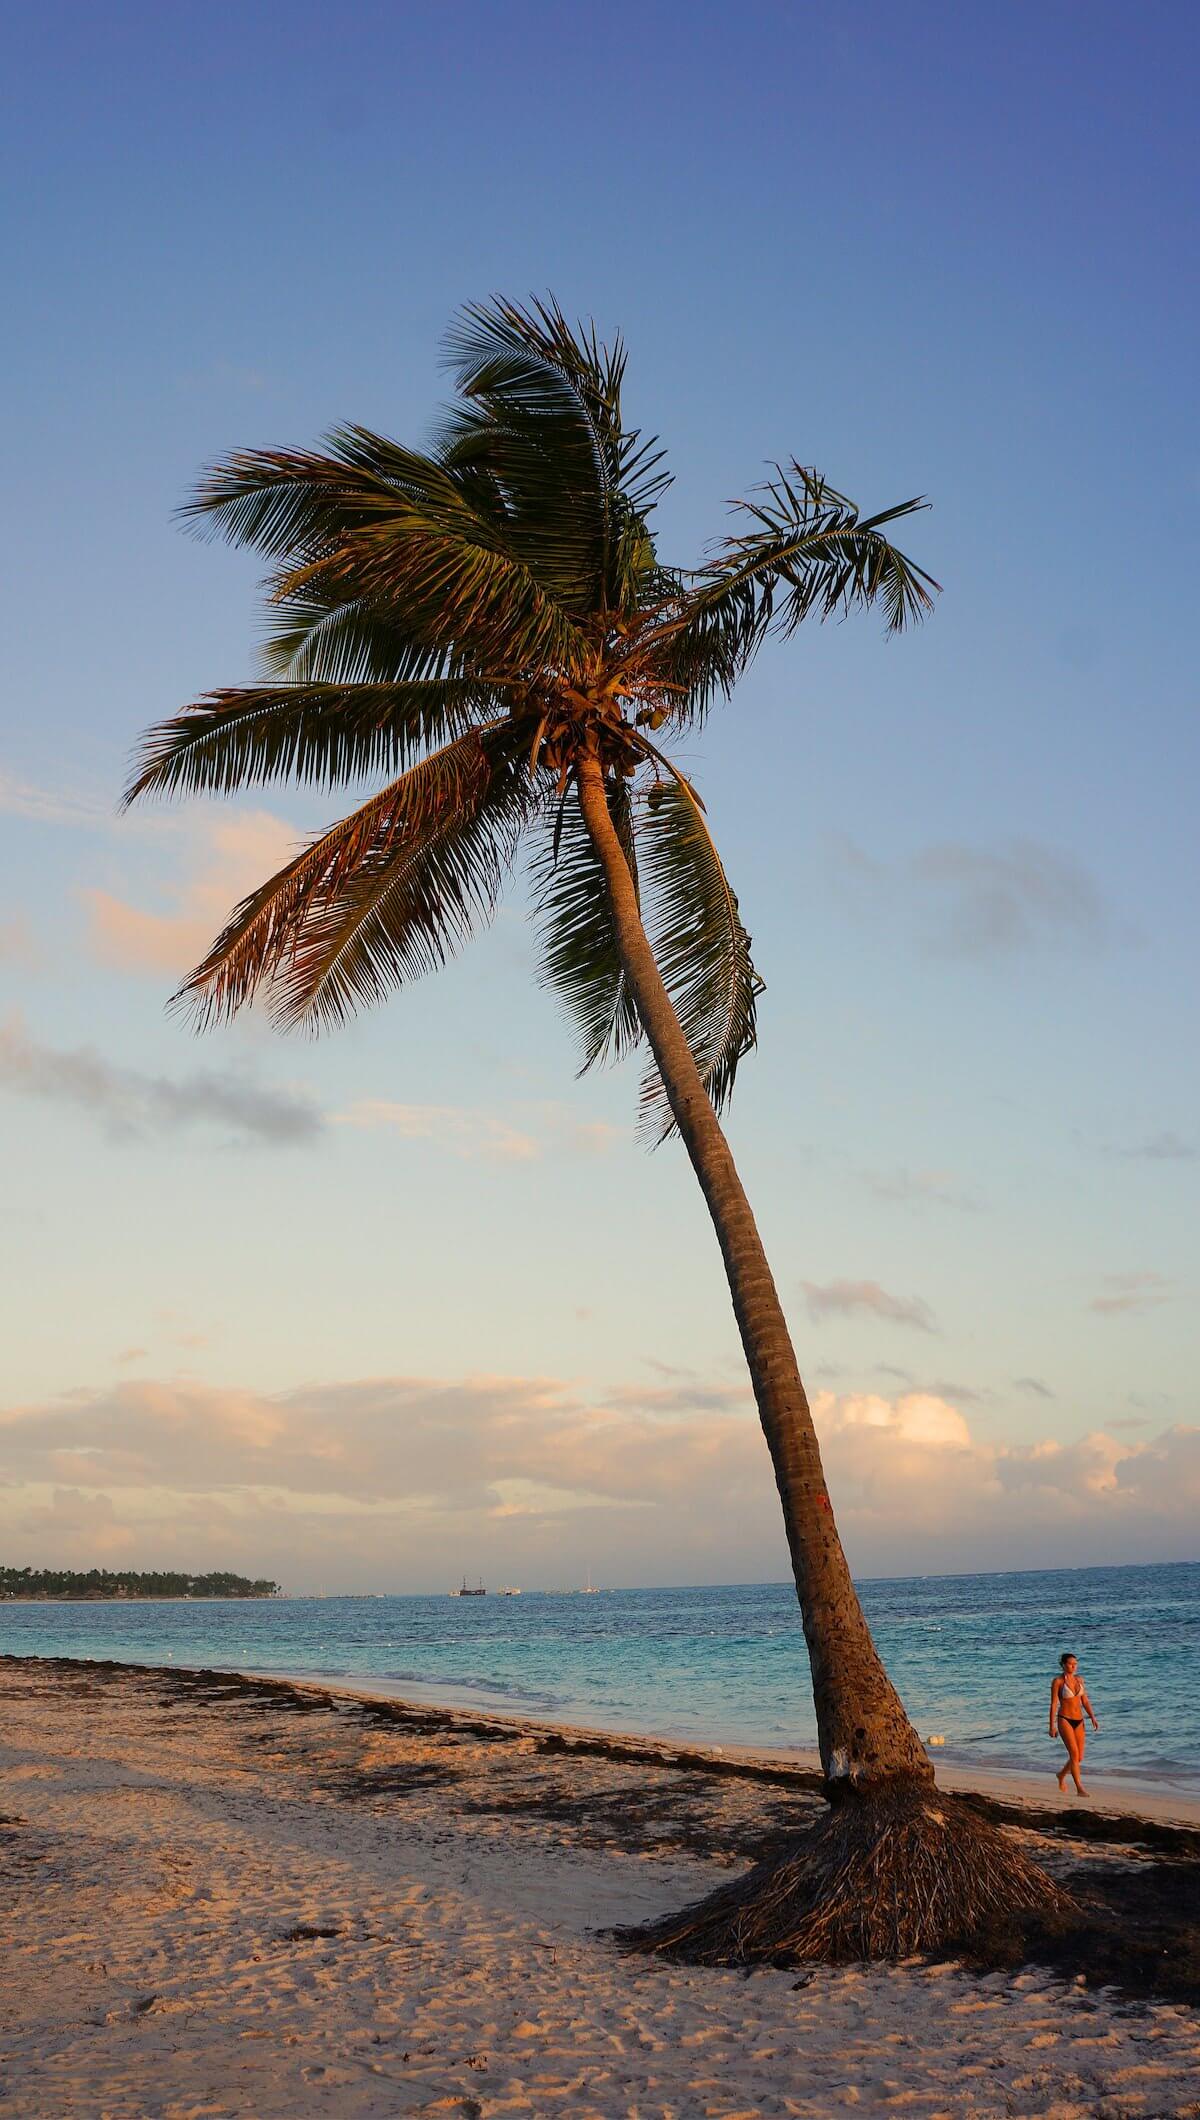 To zdjęcie dobitnie pokazuje, jak wysokie są tutaj palmy.